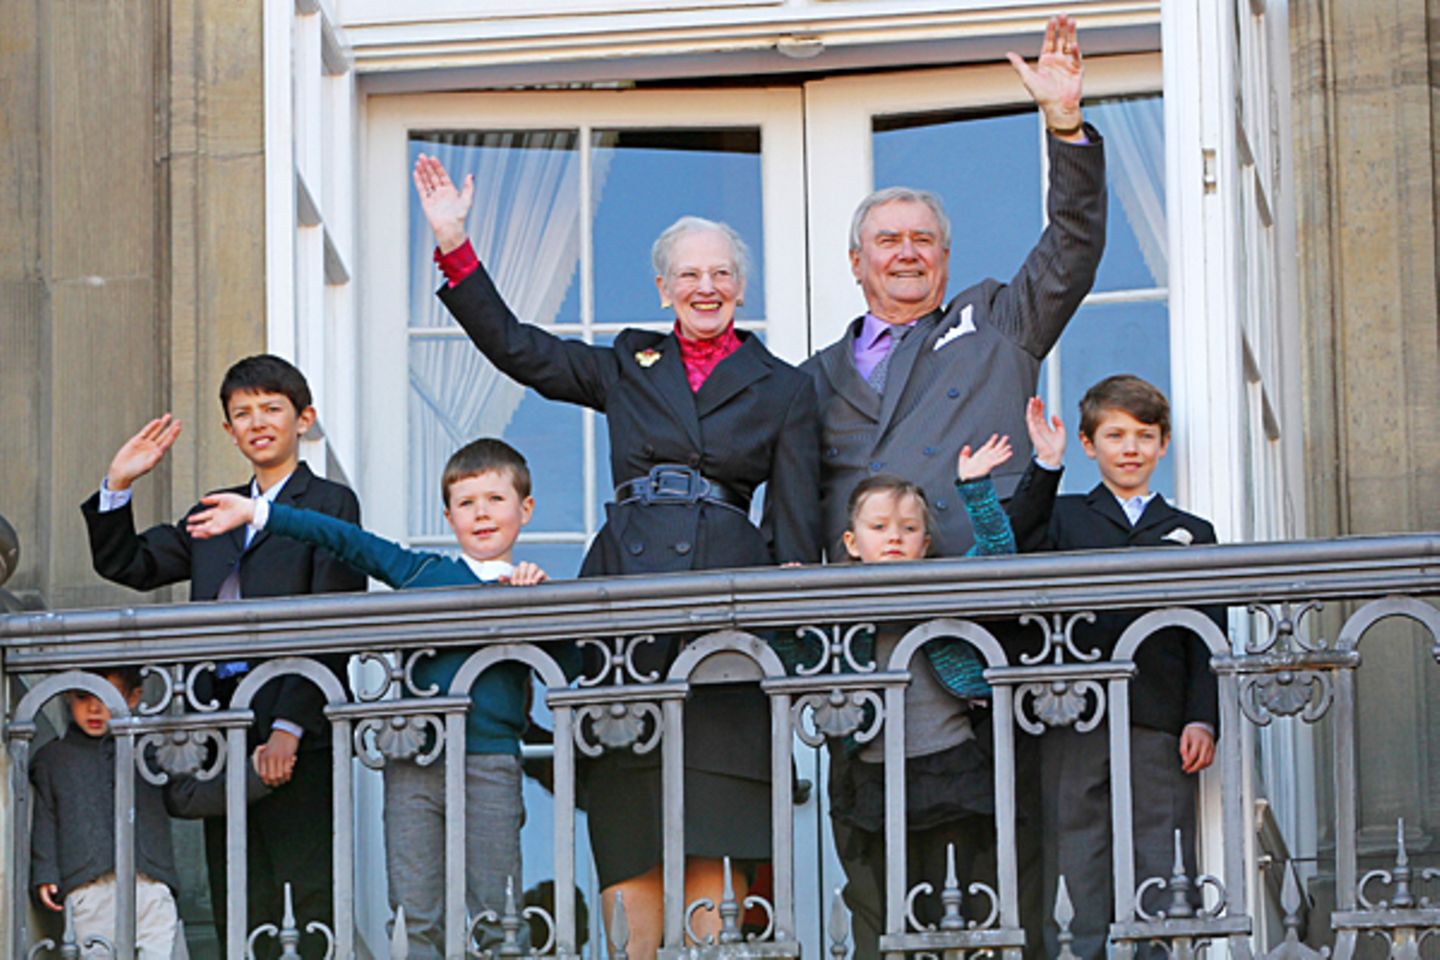 April 2012: An ihrem 72. Geburtstag erscheint die Königin in einem schicken grauen Kostüm auf dem Palastbalkon. Mit ihr feiert i